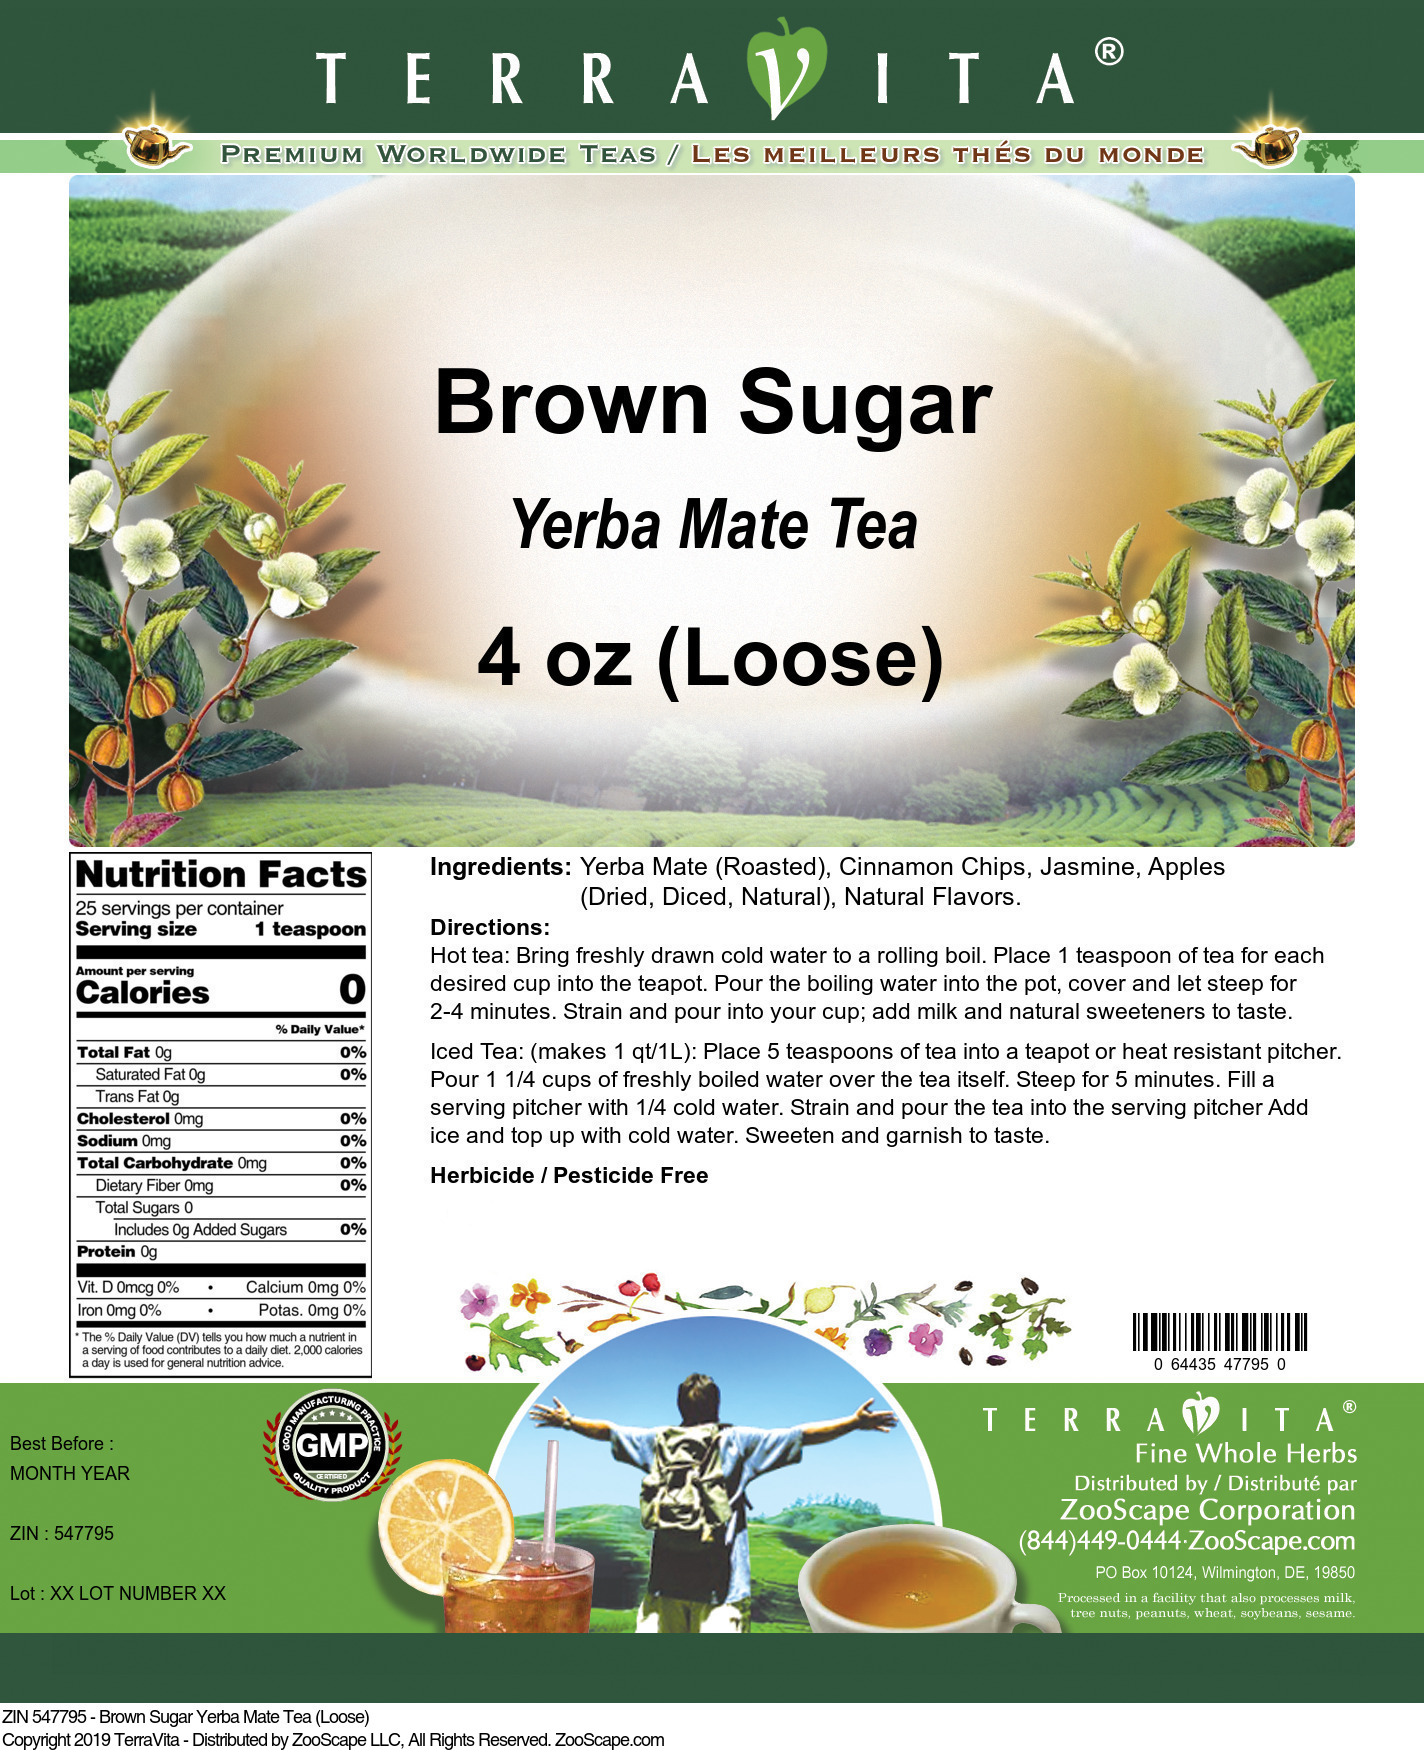 Brown Sugar Yerba Mate Tea (Loose) - Label